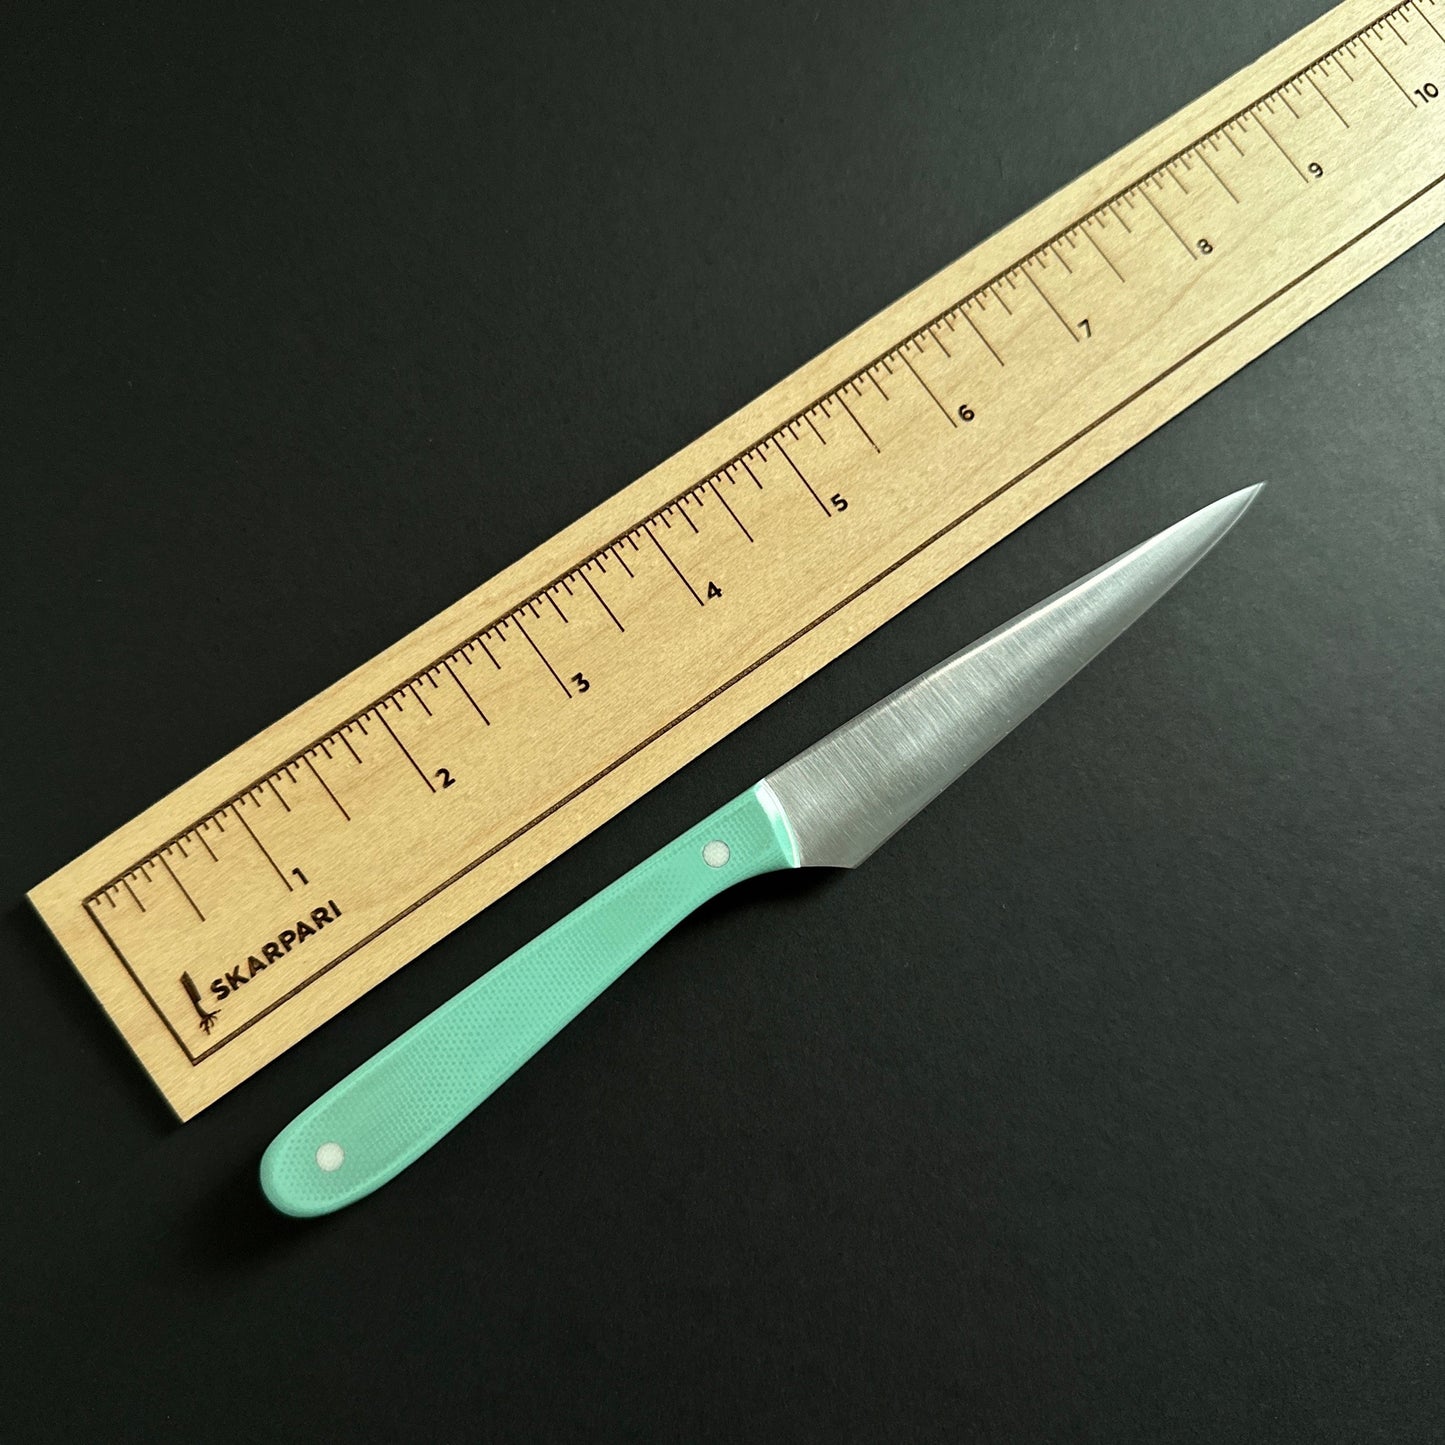 Skarpair Custom Paring Knife - No. 2204